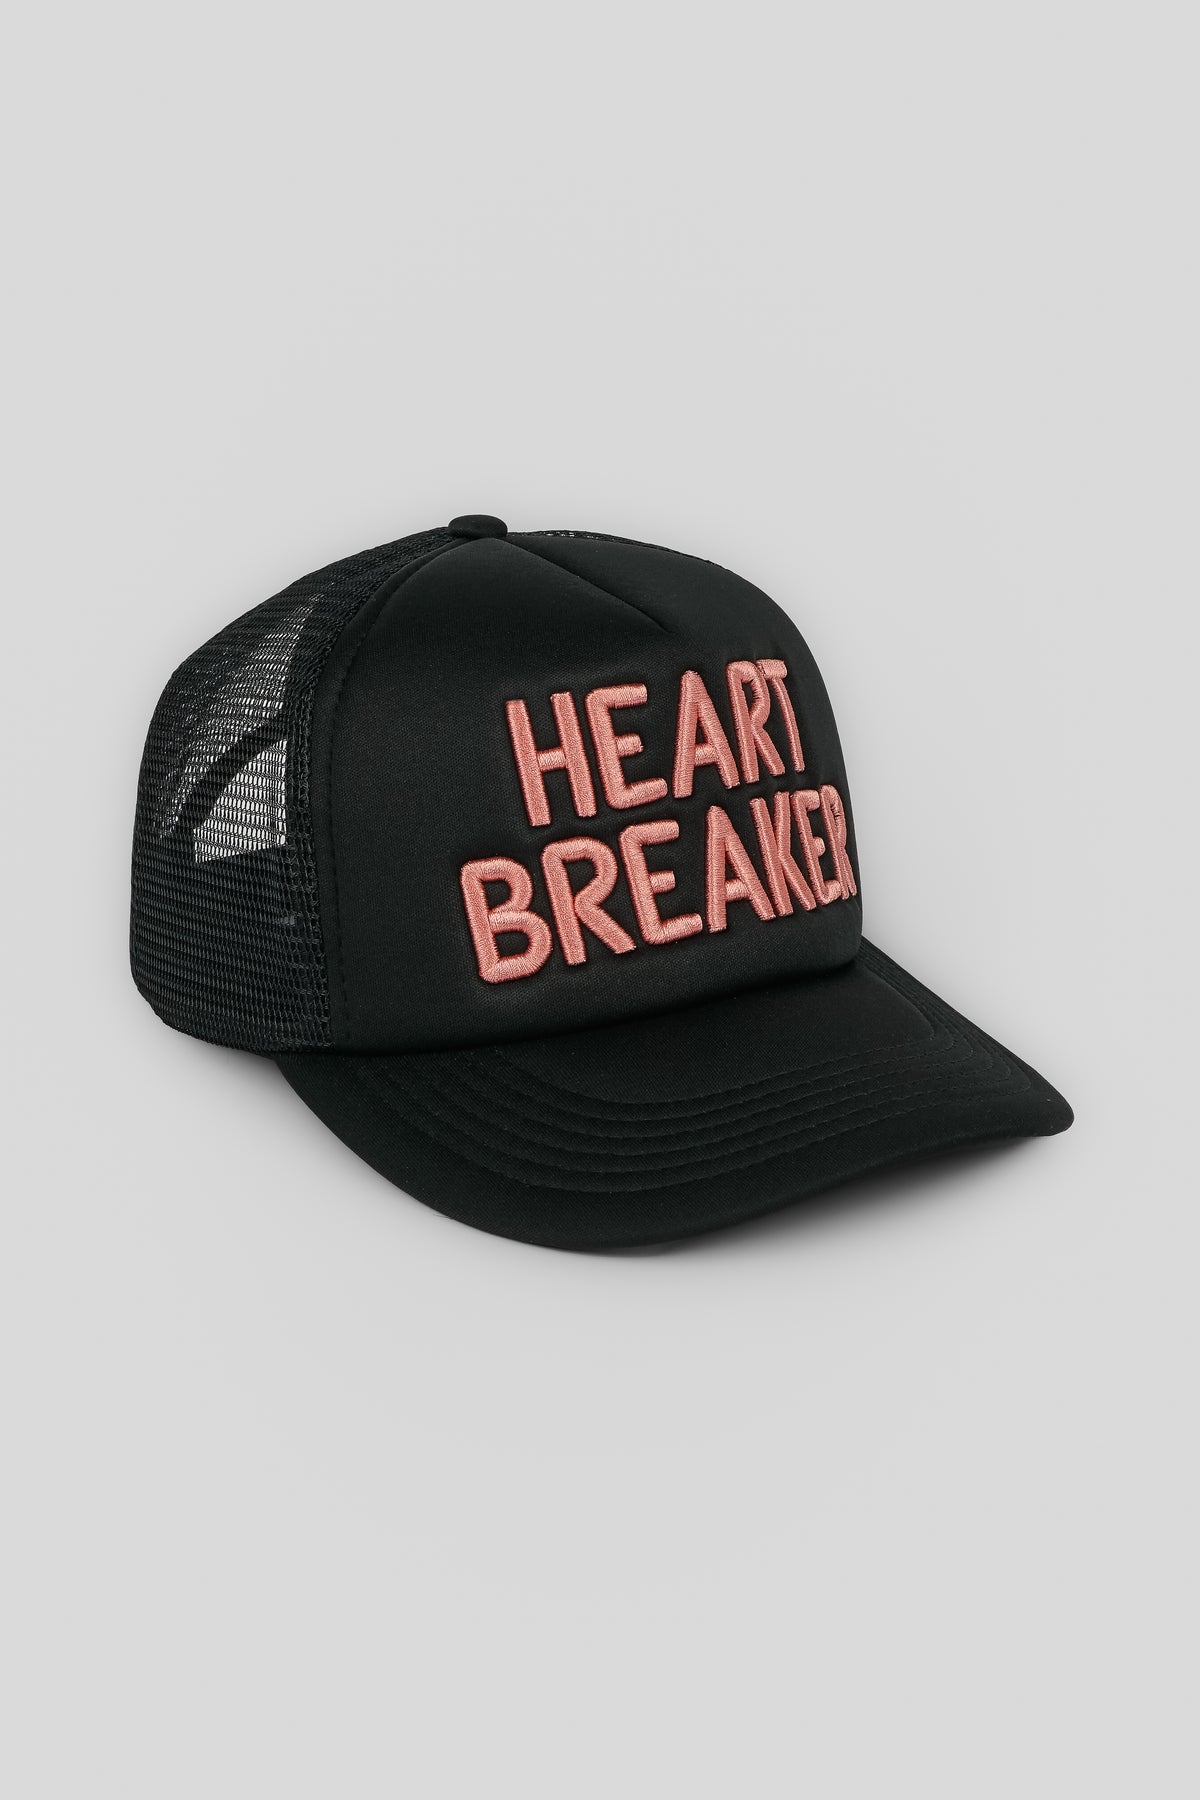 BROKEN HEART TRUCKER HAT